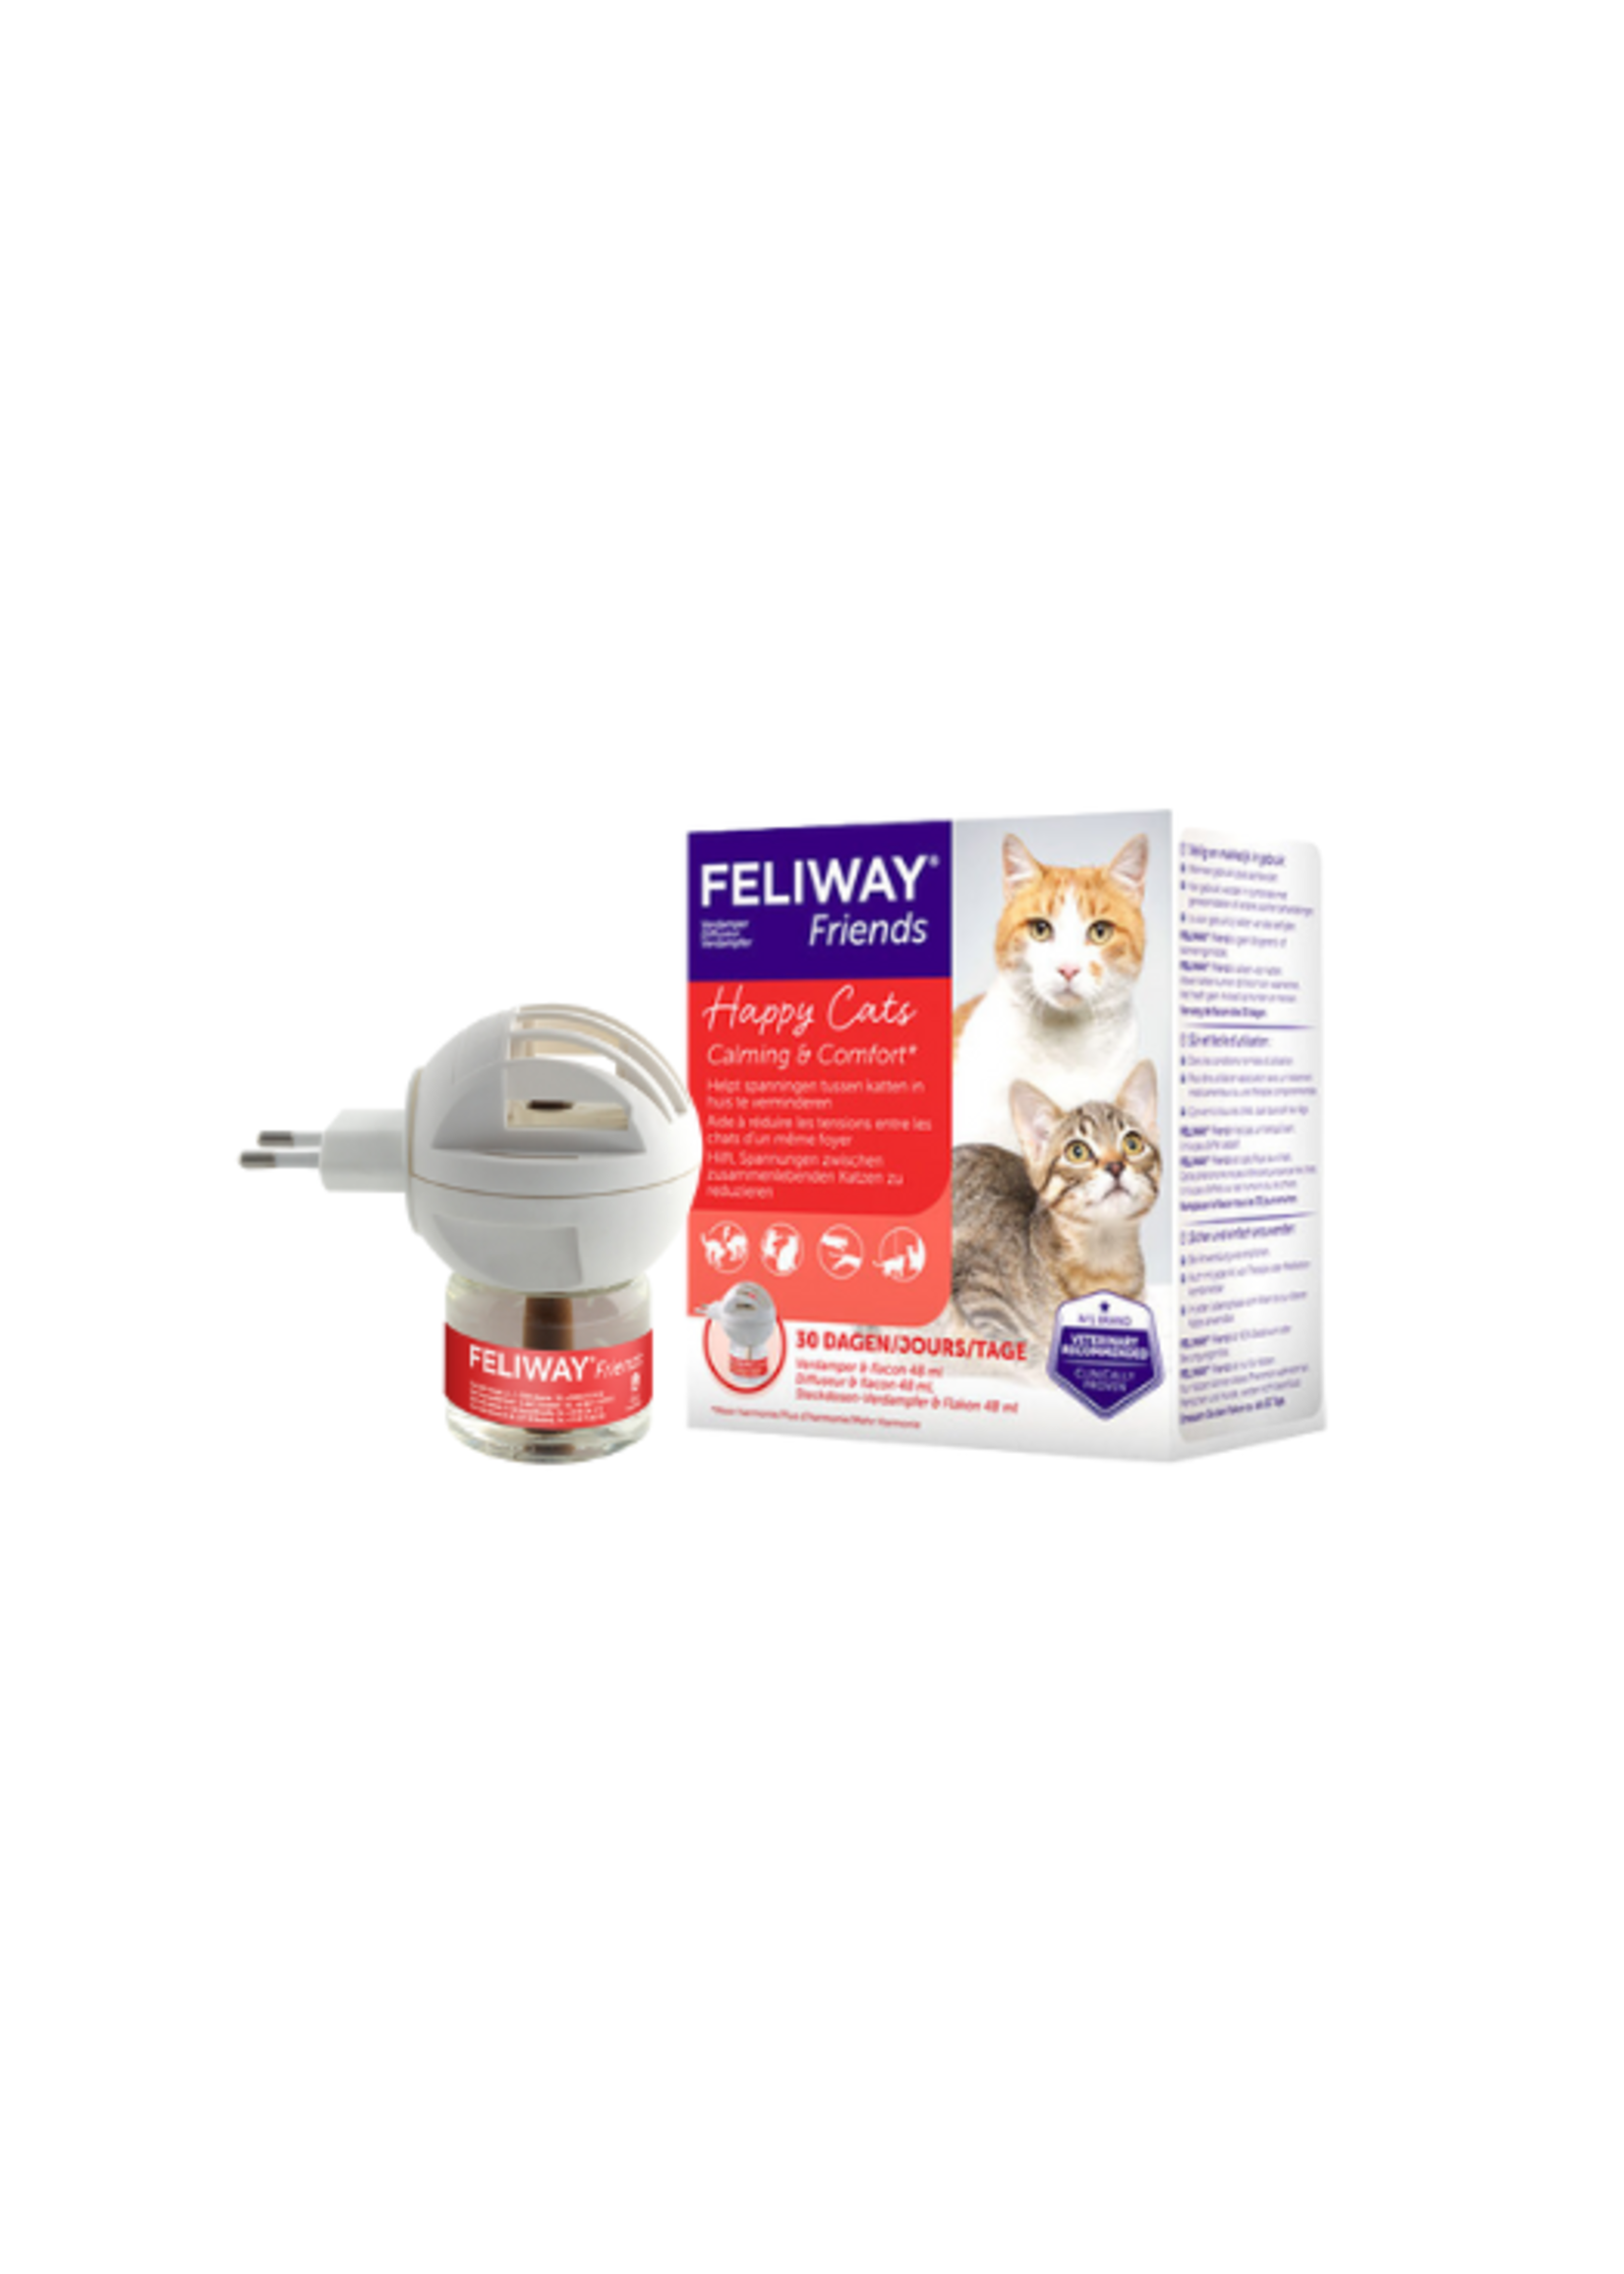 Feliway Friends | Vermindert spanning tussen katten